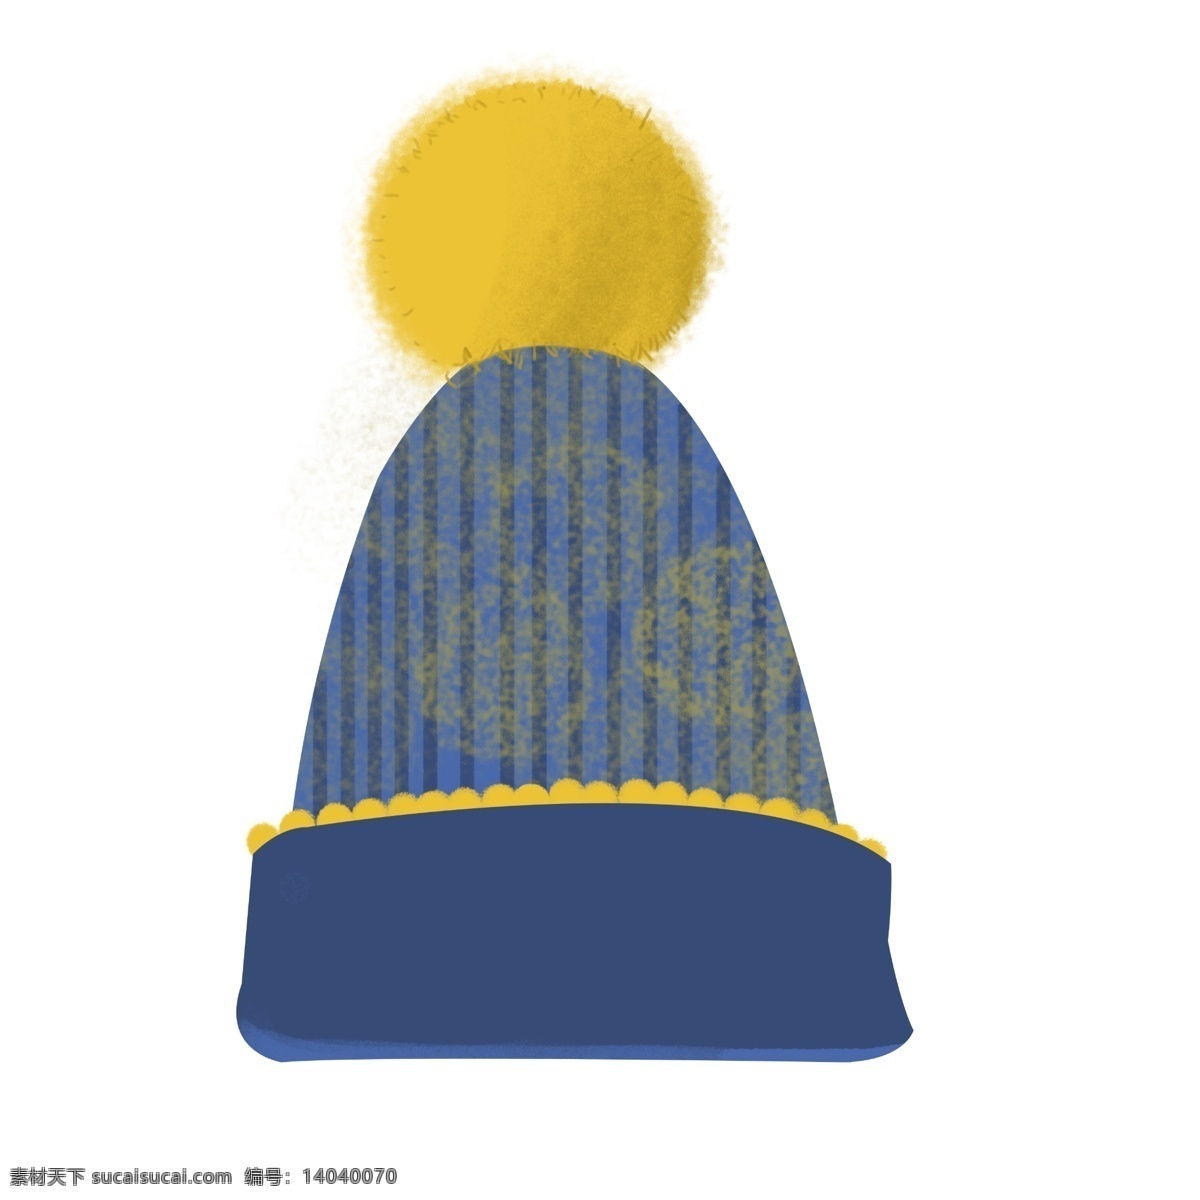 蓝色 保暖 帽子 插画 黄色毛球 蓝色帽子 冬季帽子 帽子插图 保暖帽子插画 蓝色保暖帽子 儿童帽子